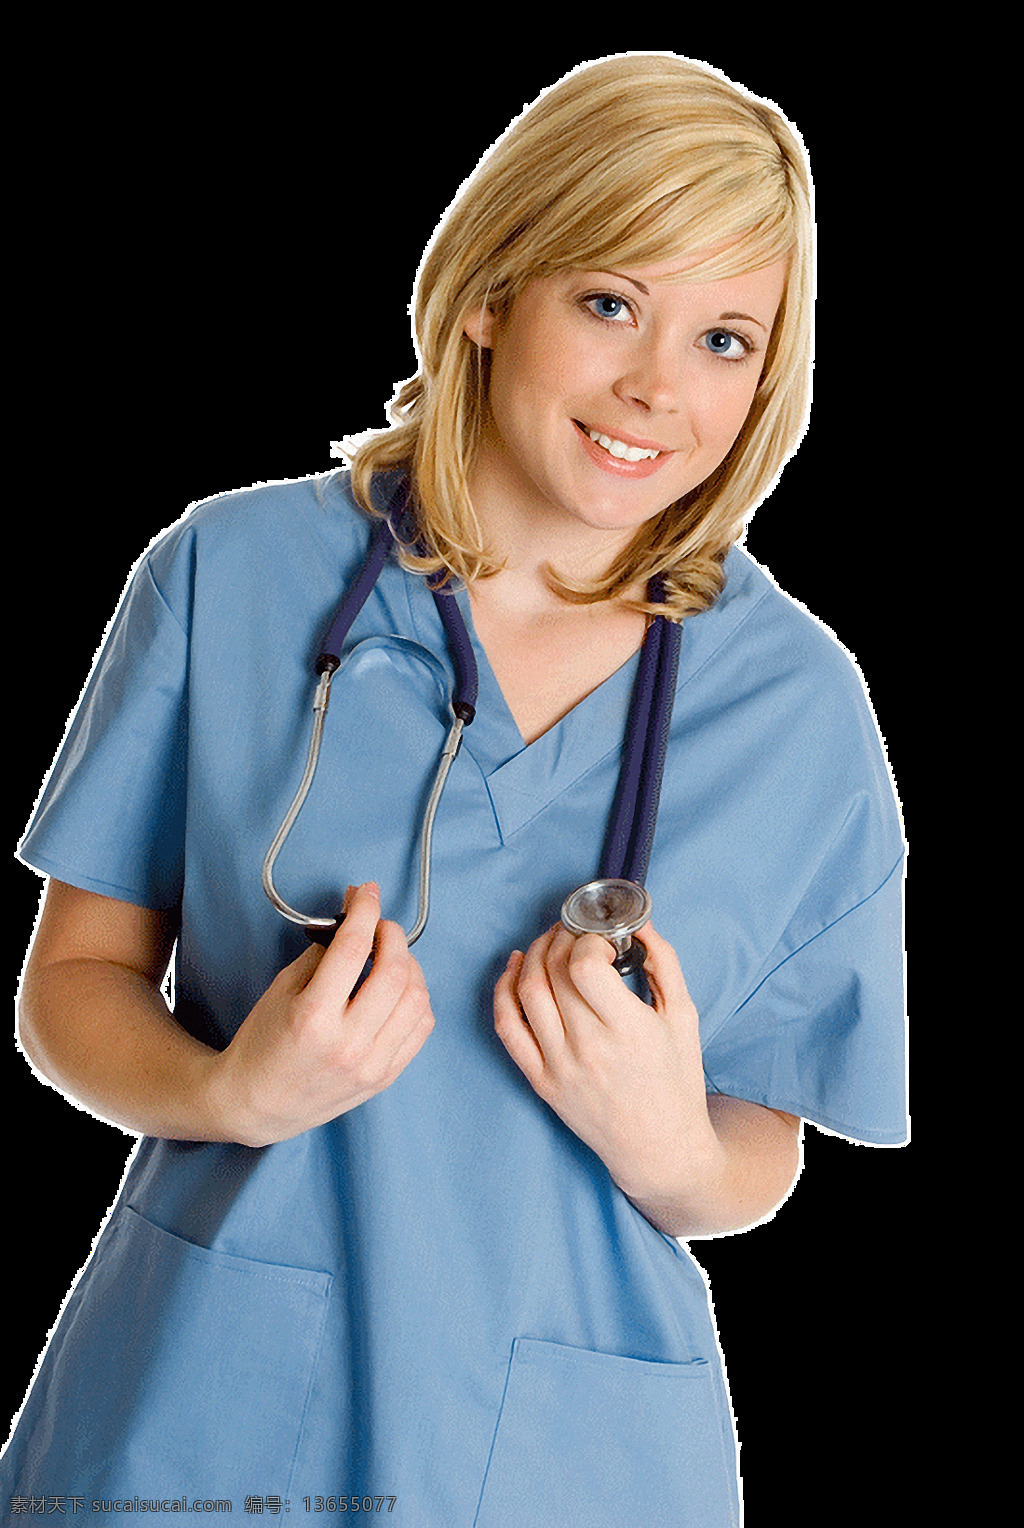 金发 美女 护士 免 抠 透明 图 层 金发美女护士 医院护士图片 卡通 大全 护士图片素材 中国护士 西方护士 医院护士 白衣天使图片 美女护士照片 漂亮护士图片